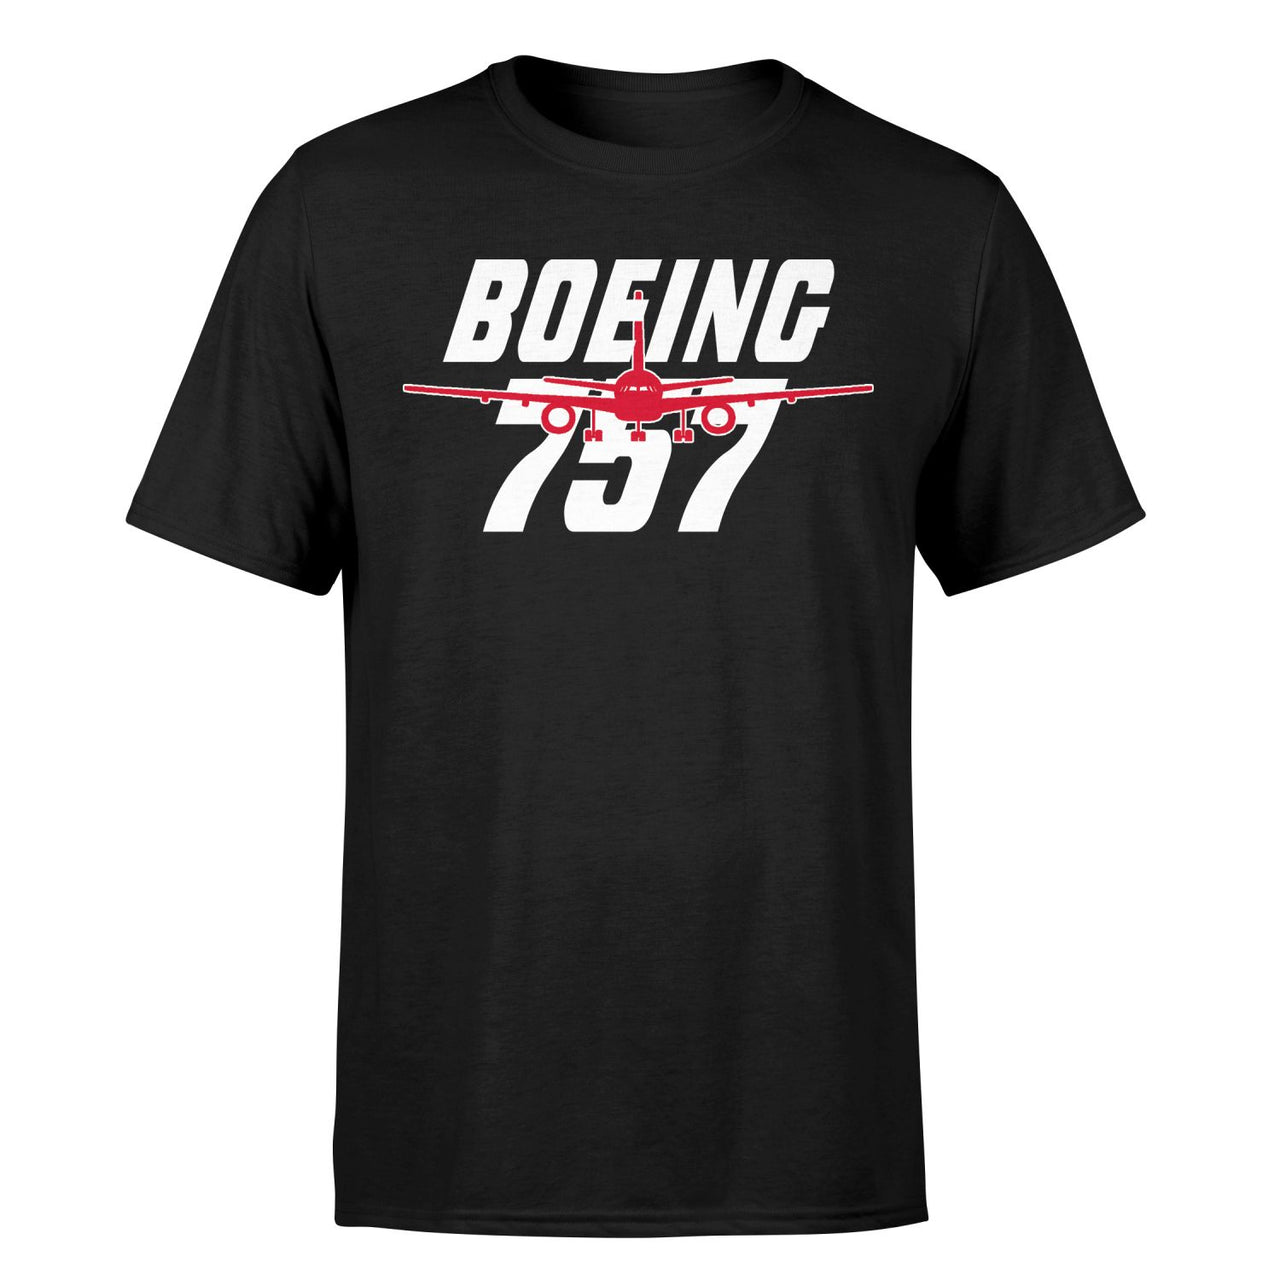 Amazing Boeing 757 Designed T-Shirts